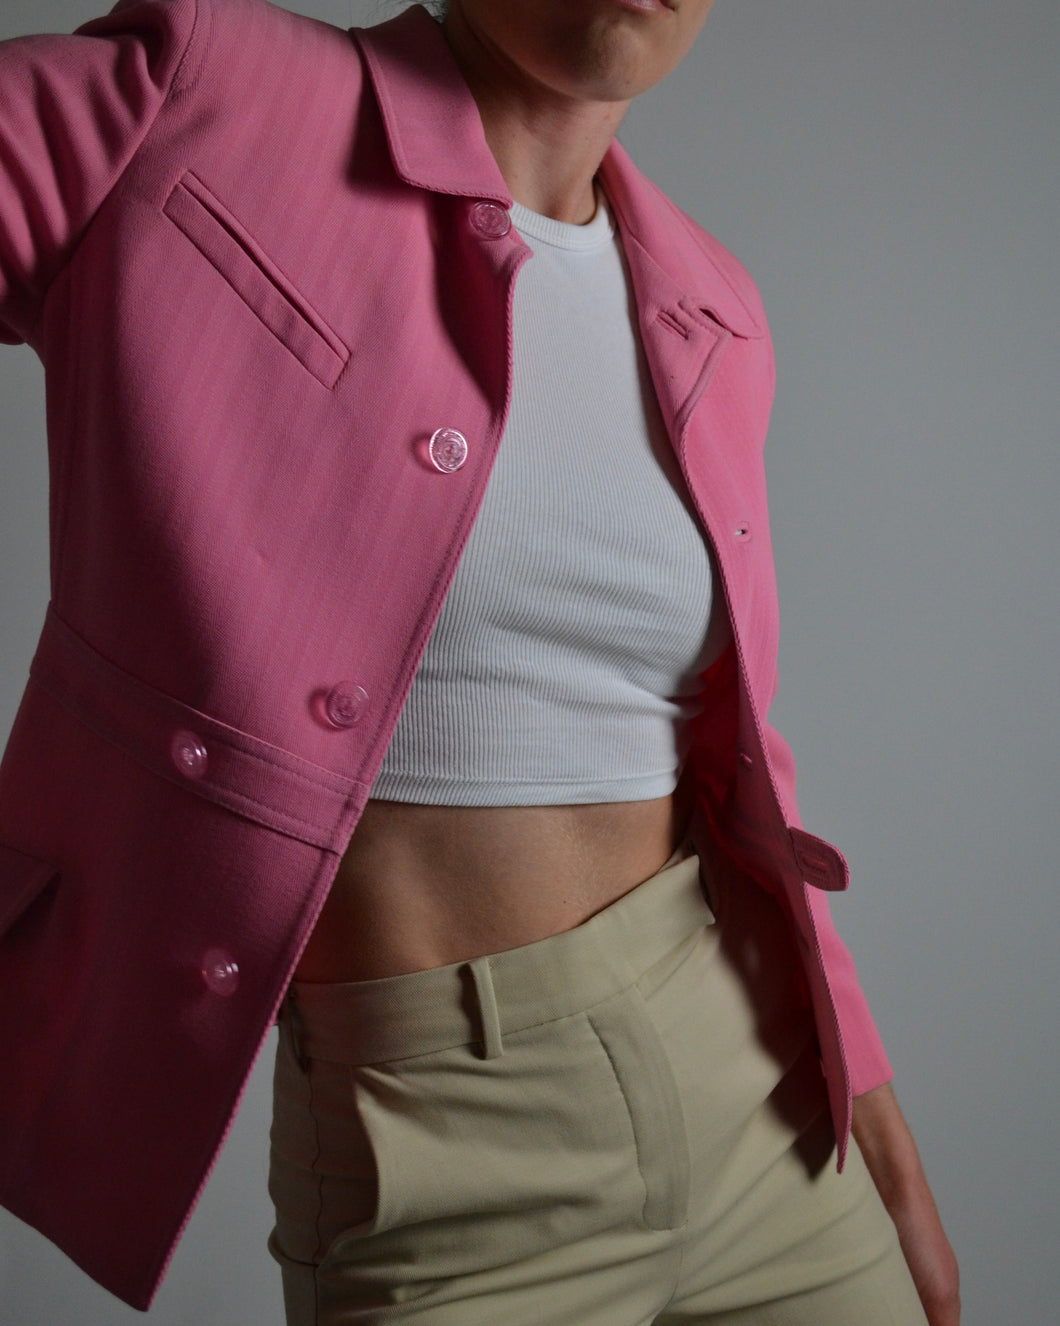 Gianni Versace Bubblegum Pink Blazer